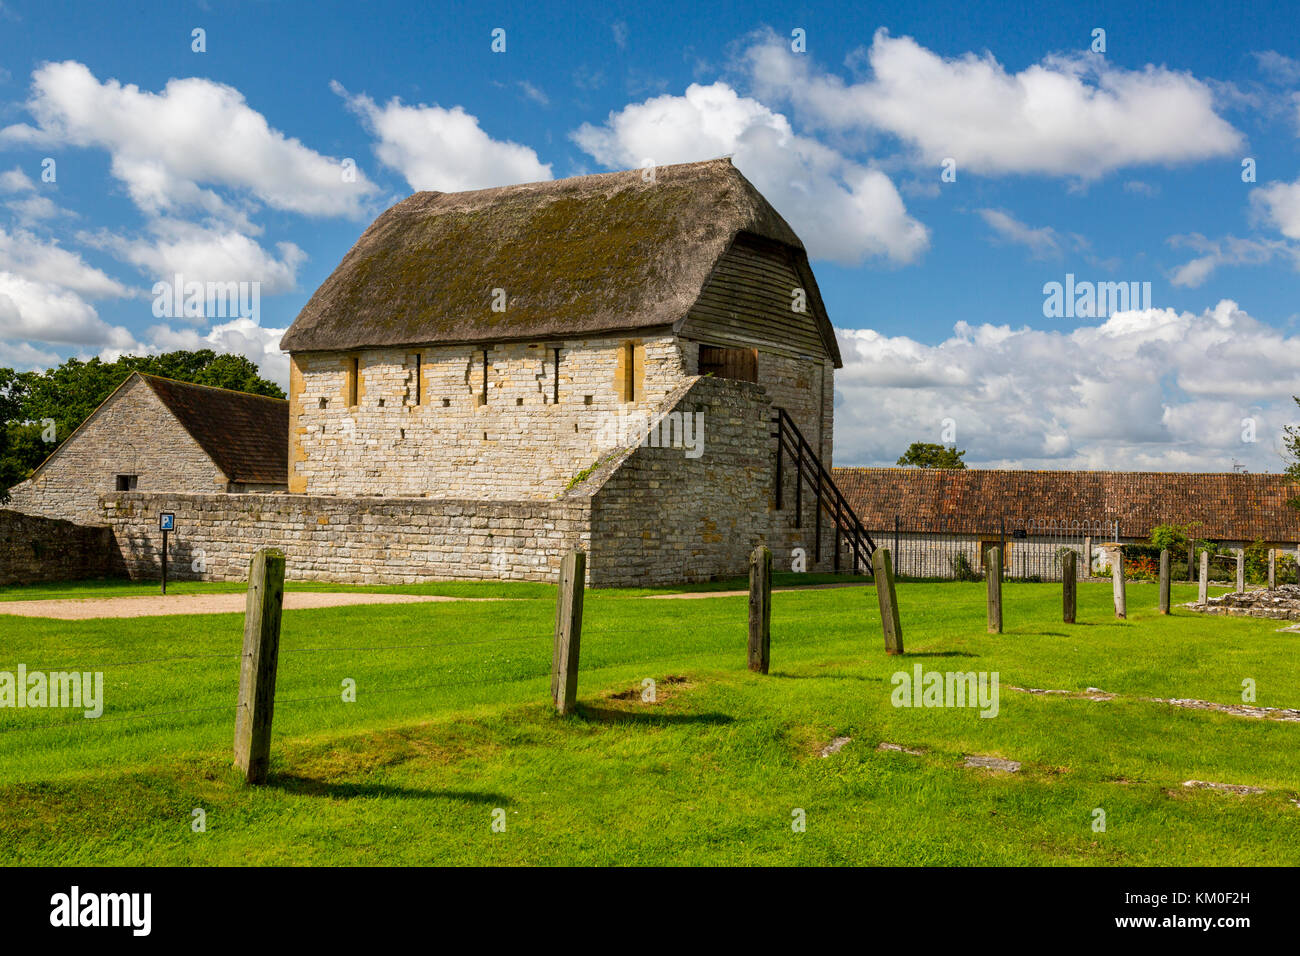 Die reredorter (mittelalterliche Toilette Gebäude) der ehemaligen Benediktinerabtei in Muchelney, Somerset, England, Großbritannien Stockfoto